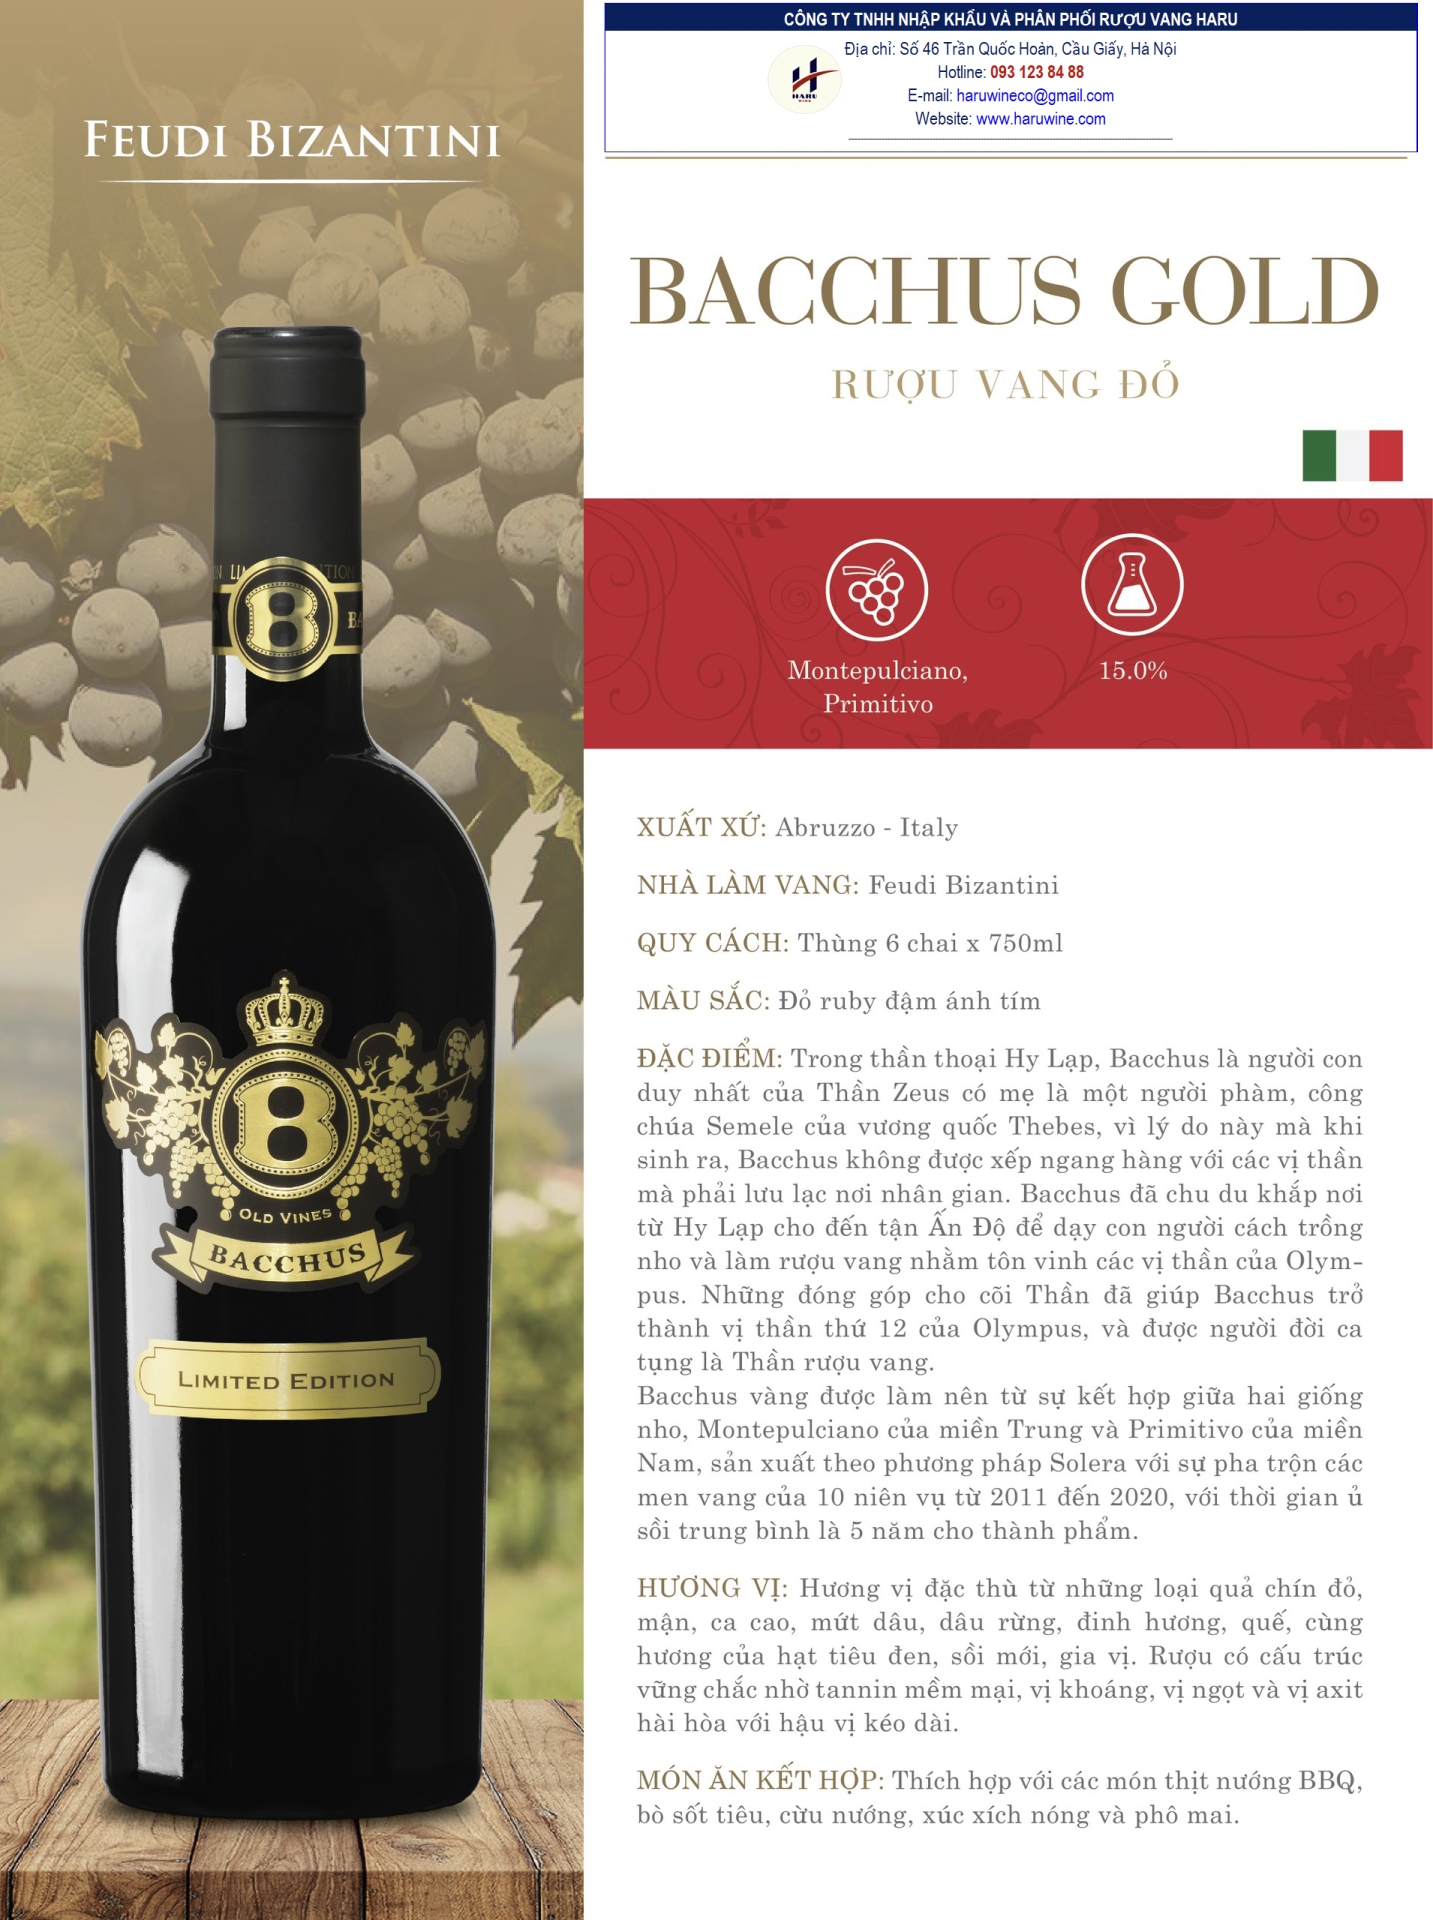 Rượu vang đỏ Bacchus gold